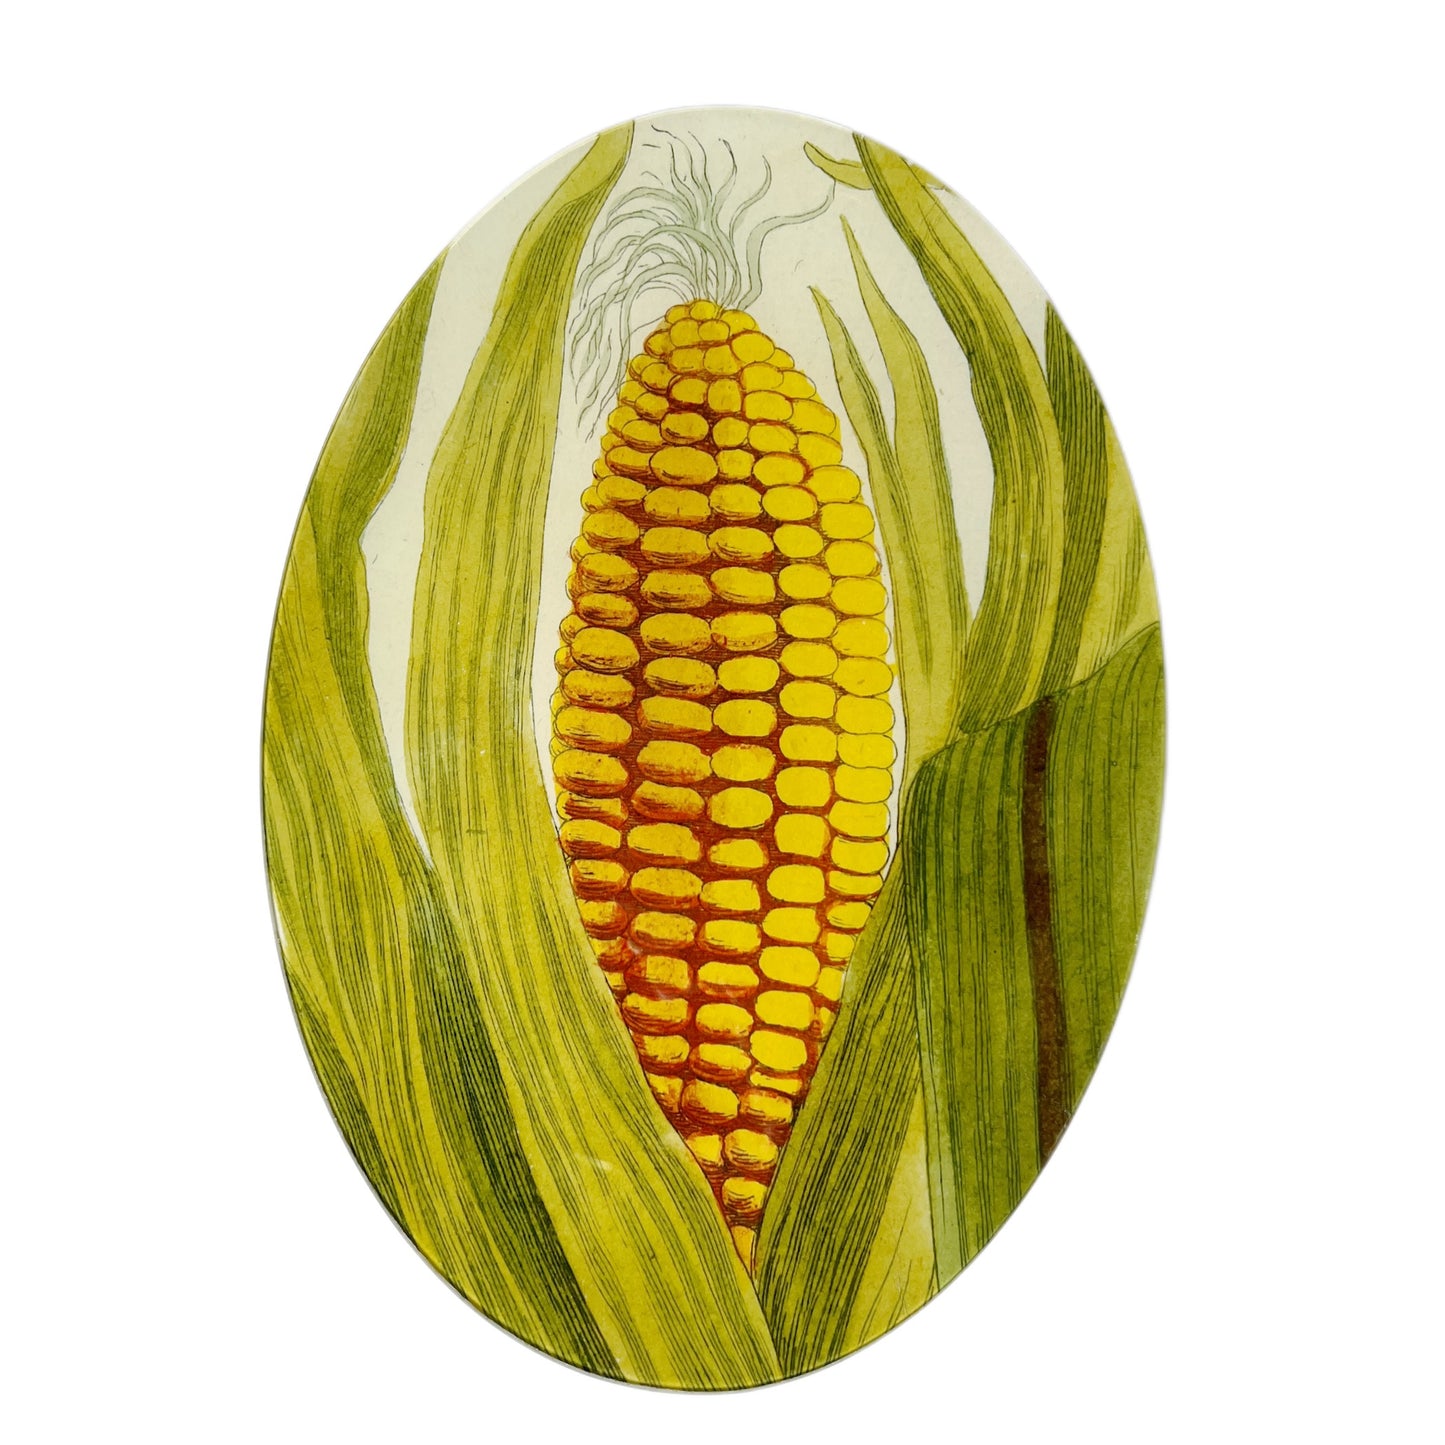 【JOHN DERIAN】デコパージュプレート Yellow Corn